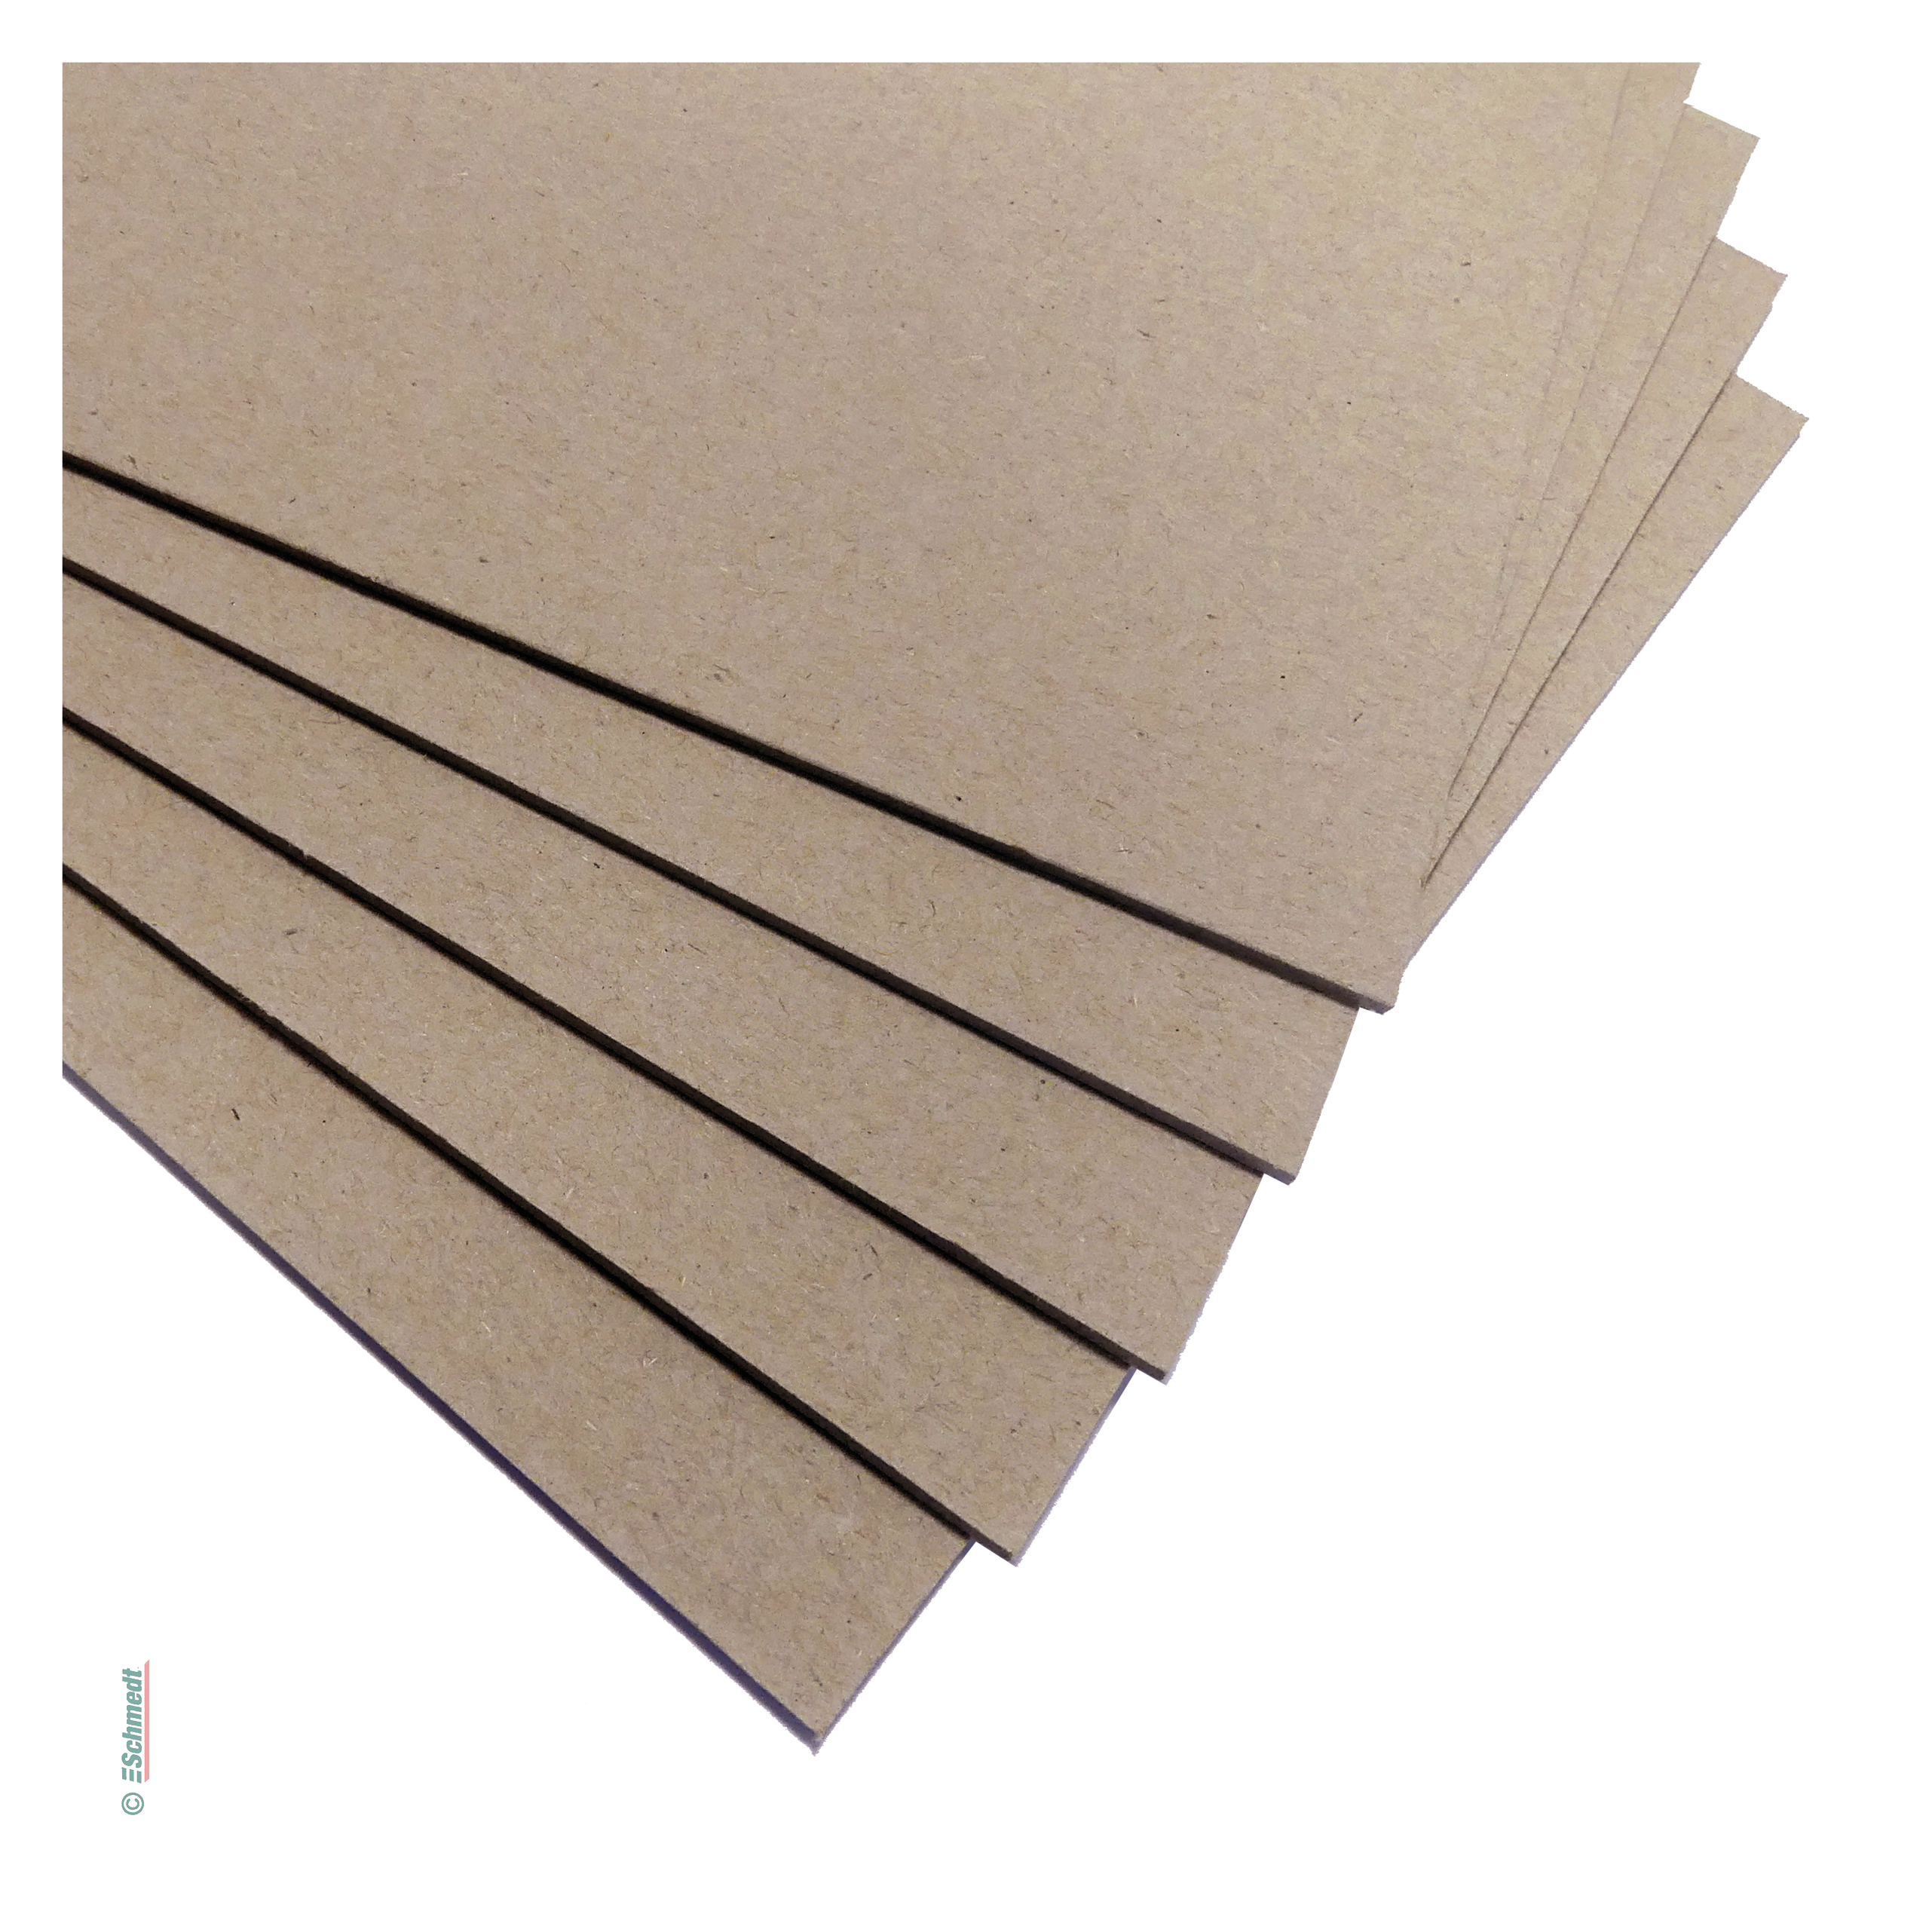 Graupappe, leichte Qualität / Kiloware - Stärke: 2,0 mm - für die Fertigung von Hardcover-Buchdecken (Buchdeckel und Buchrücken), Schachteln...